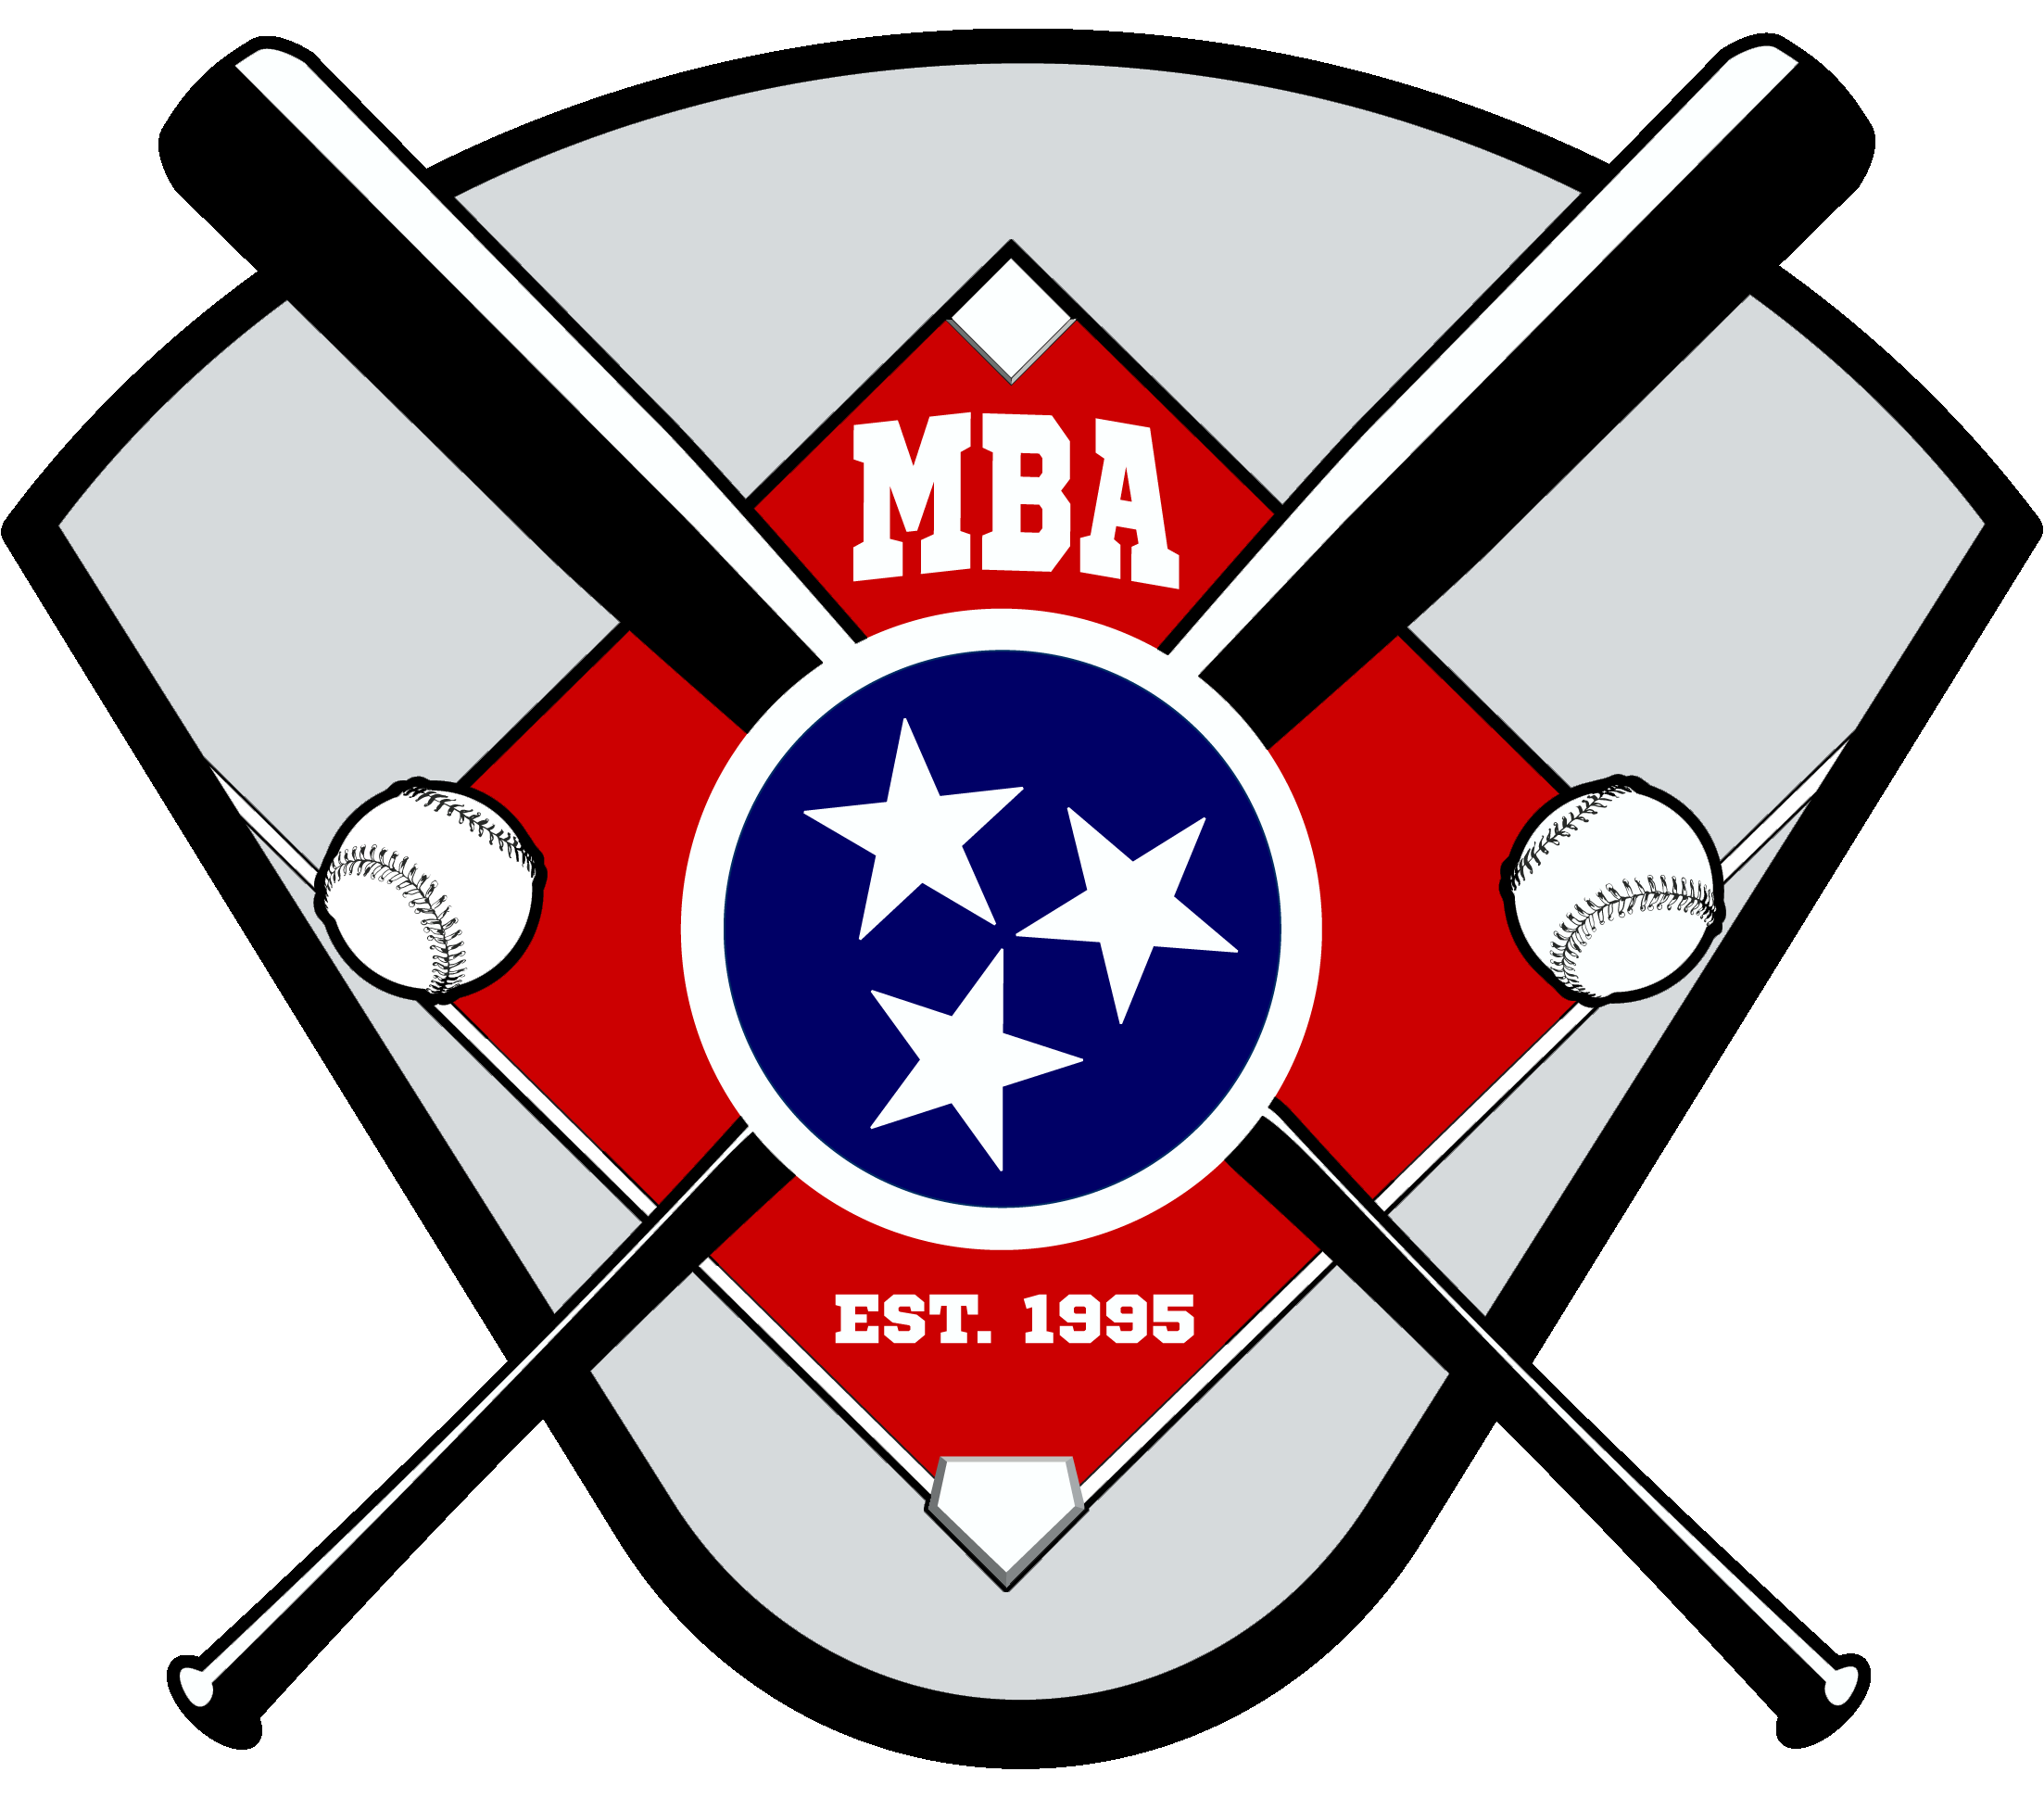 Murfreesboro Baseball & Softball Association located at Barfield Park in Murfreesboro, TN.